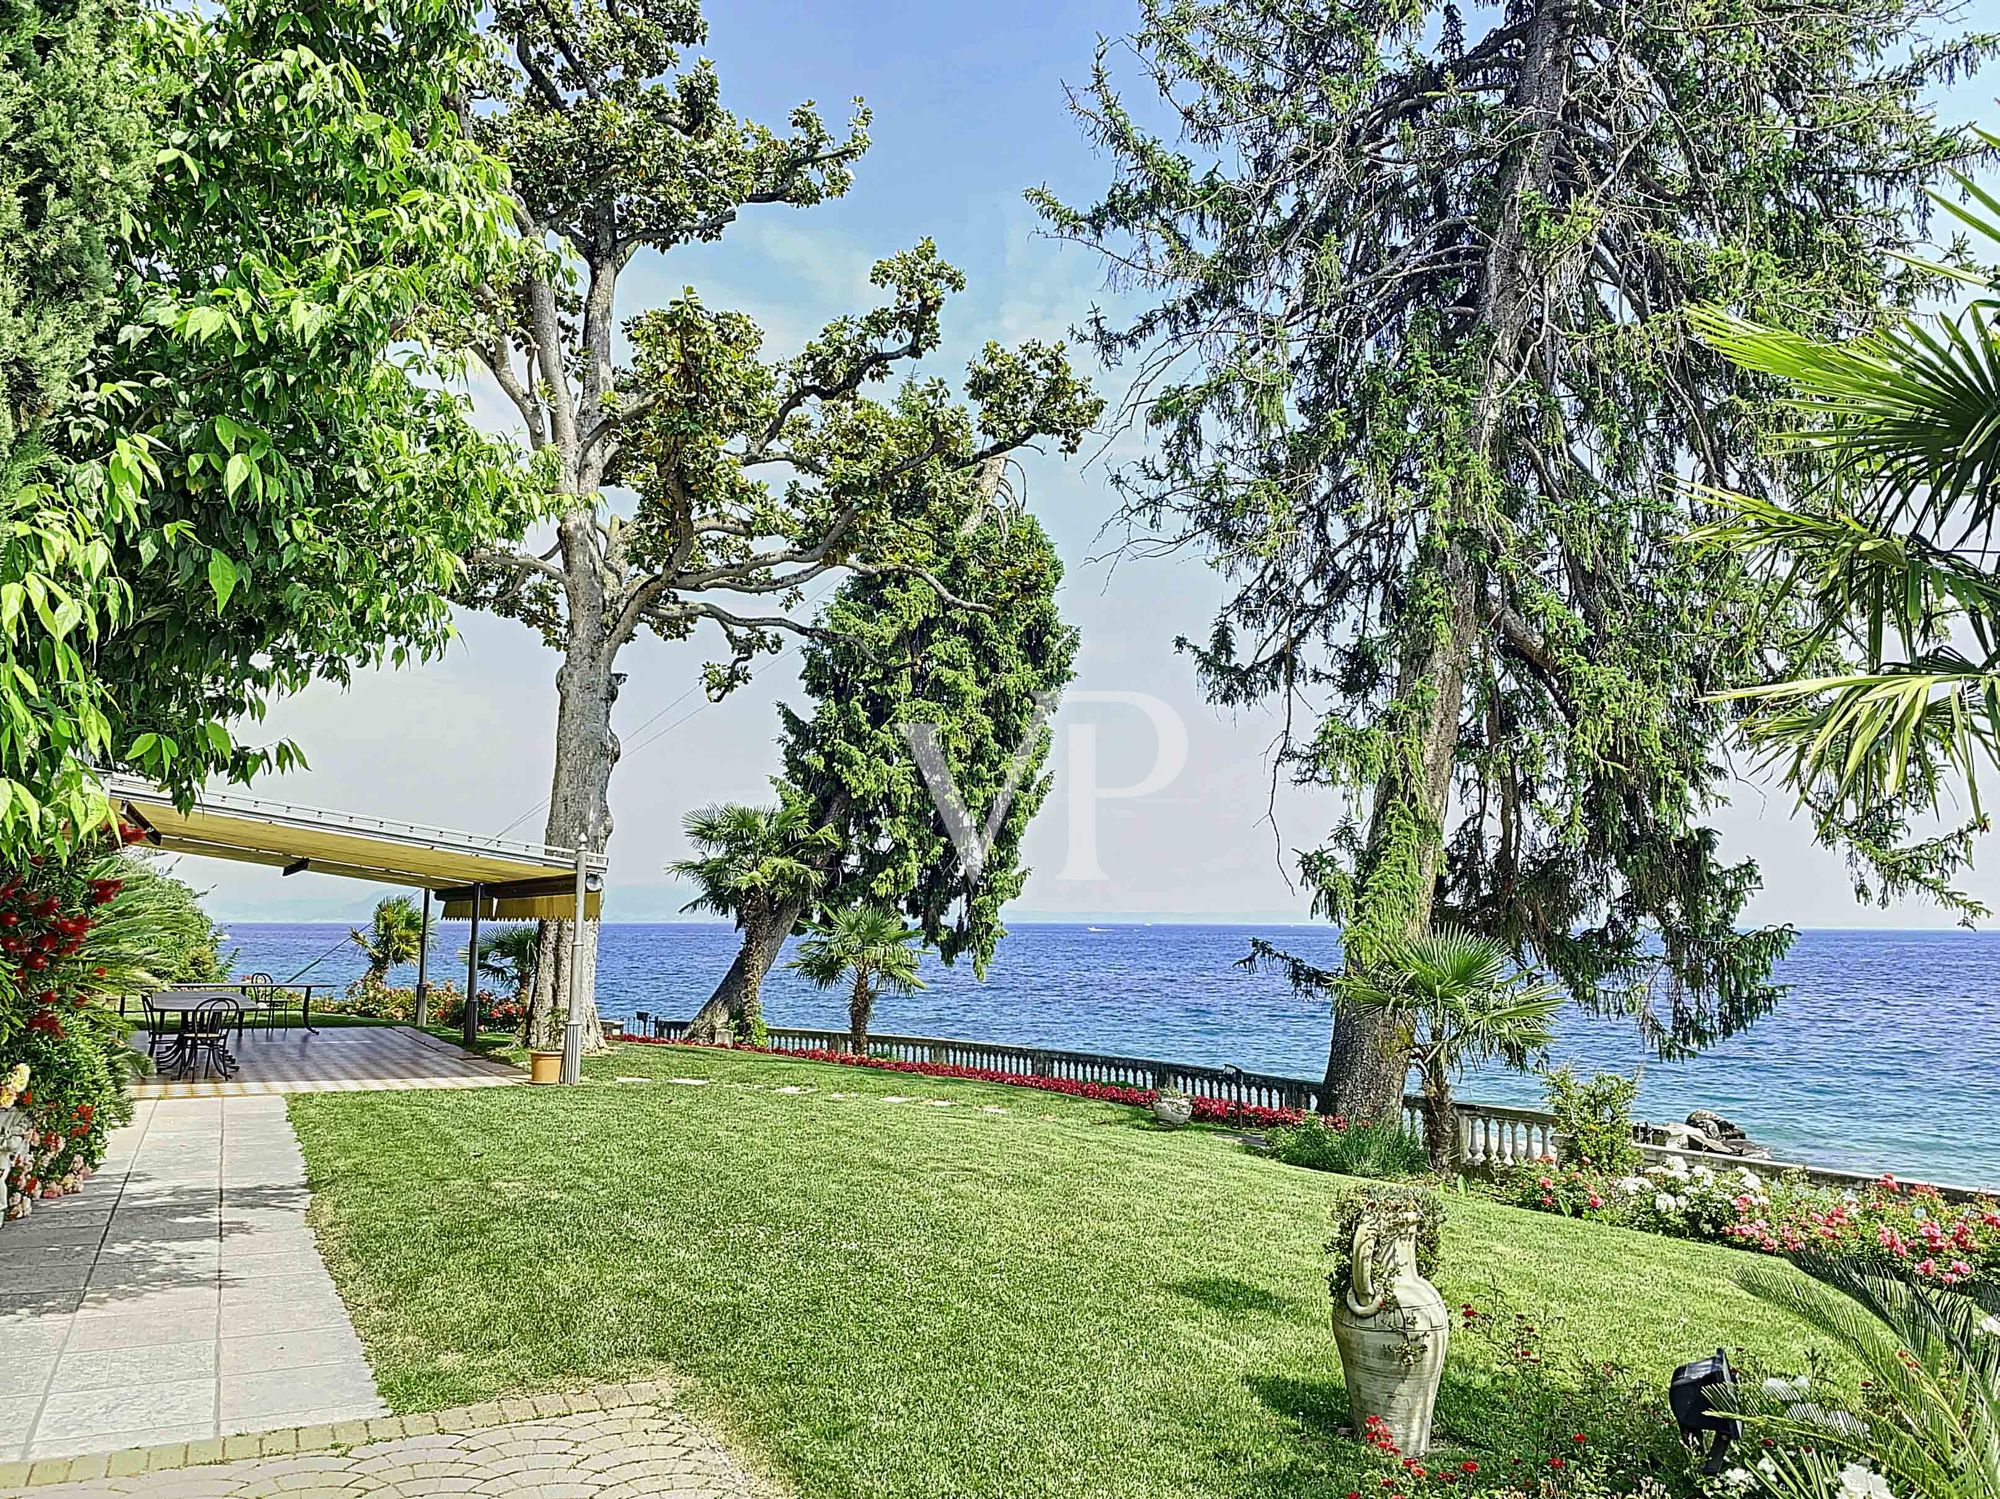 Impressive Villa in direct line with the Lake